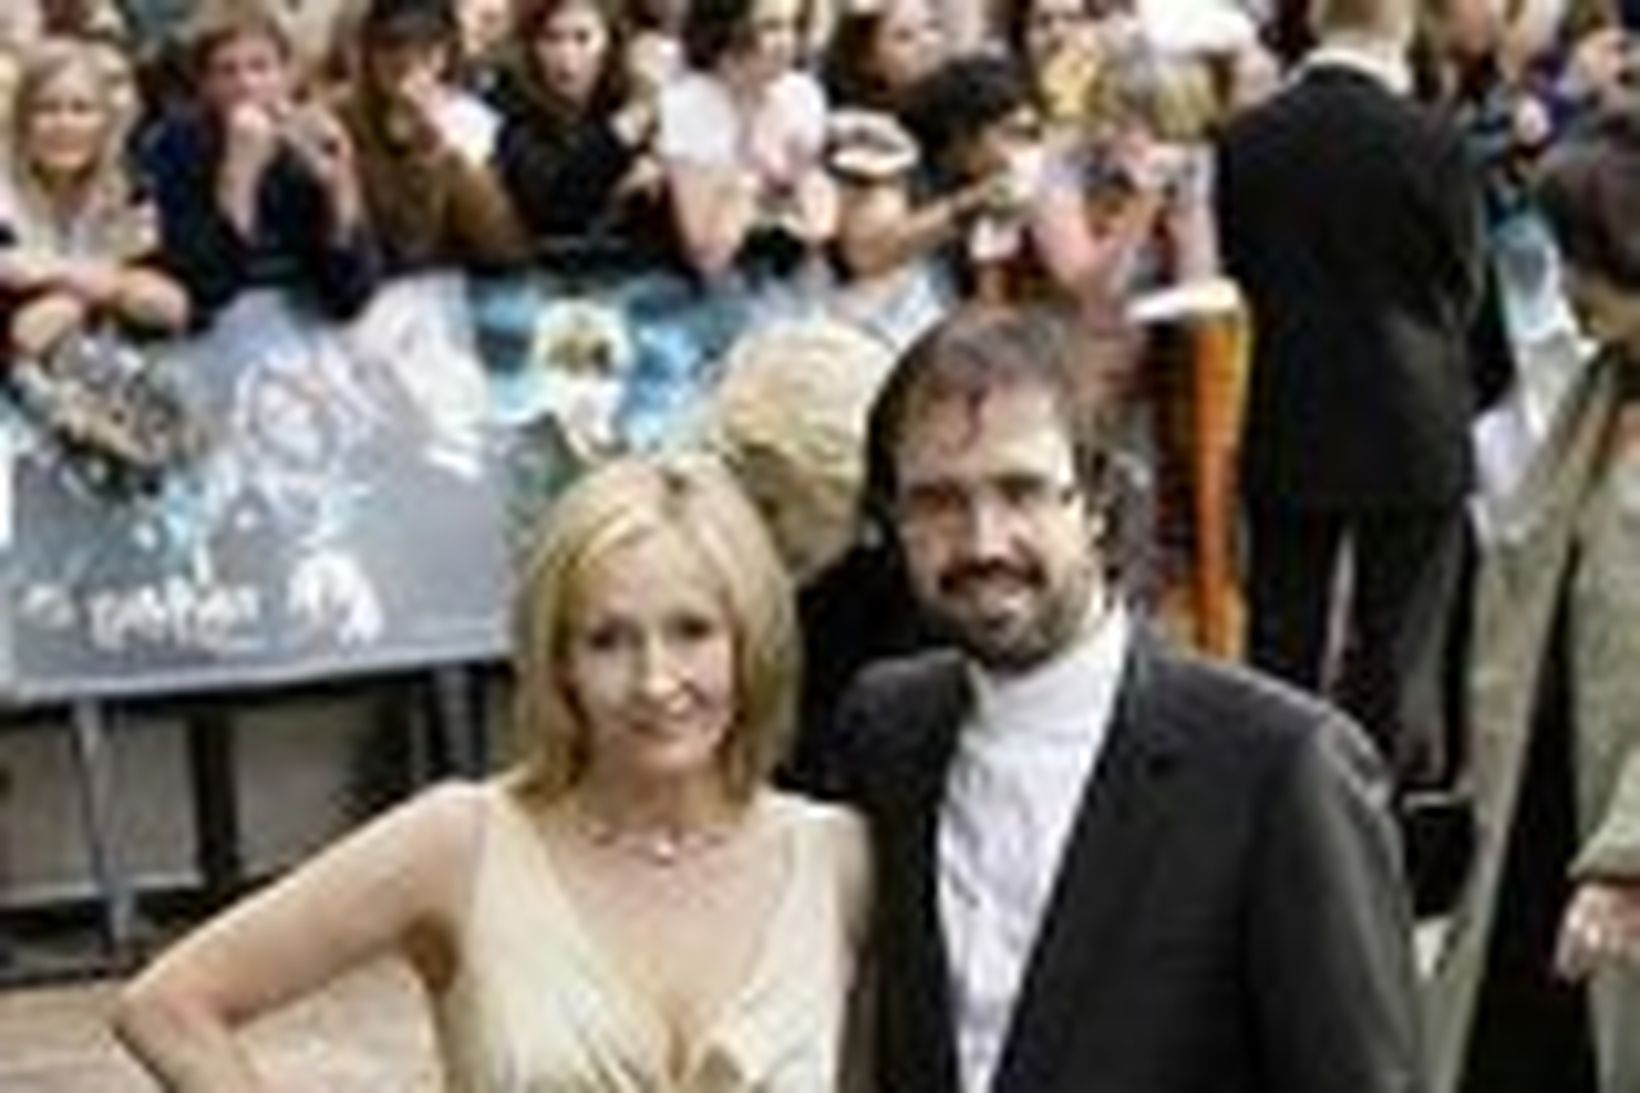 J.K. Rowling ásamt eiginmanni sínum Neil Murray.